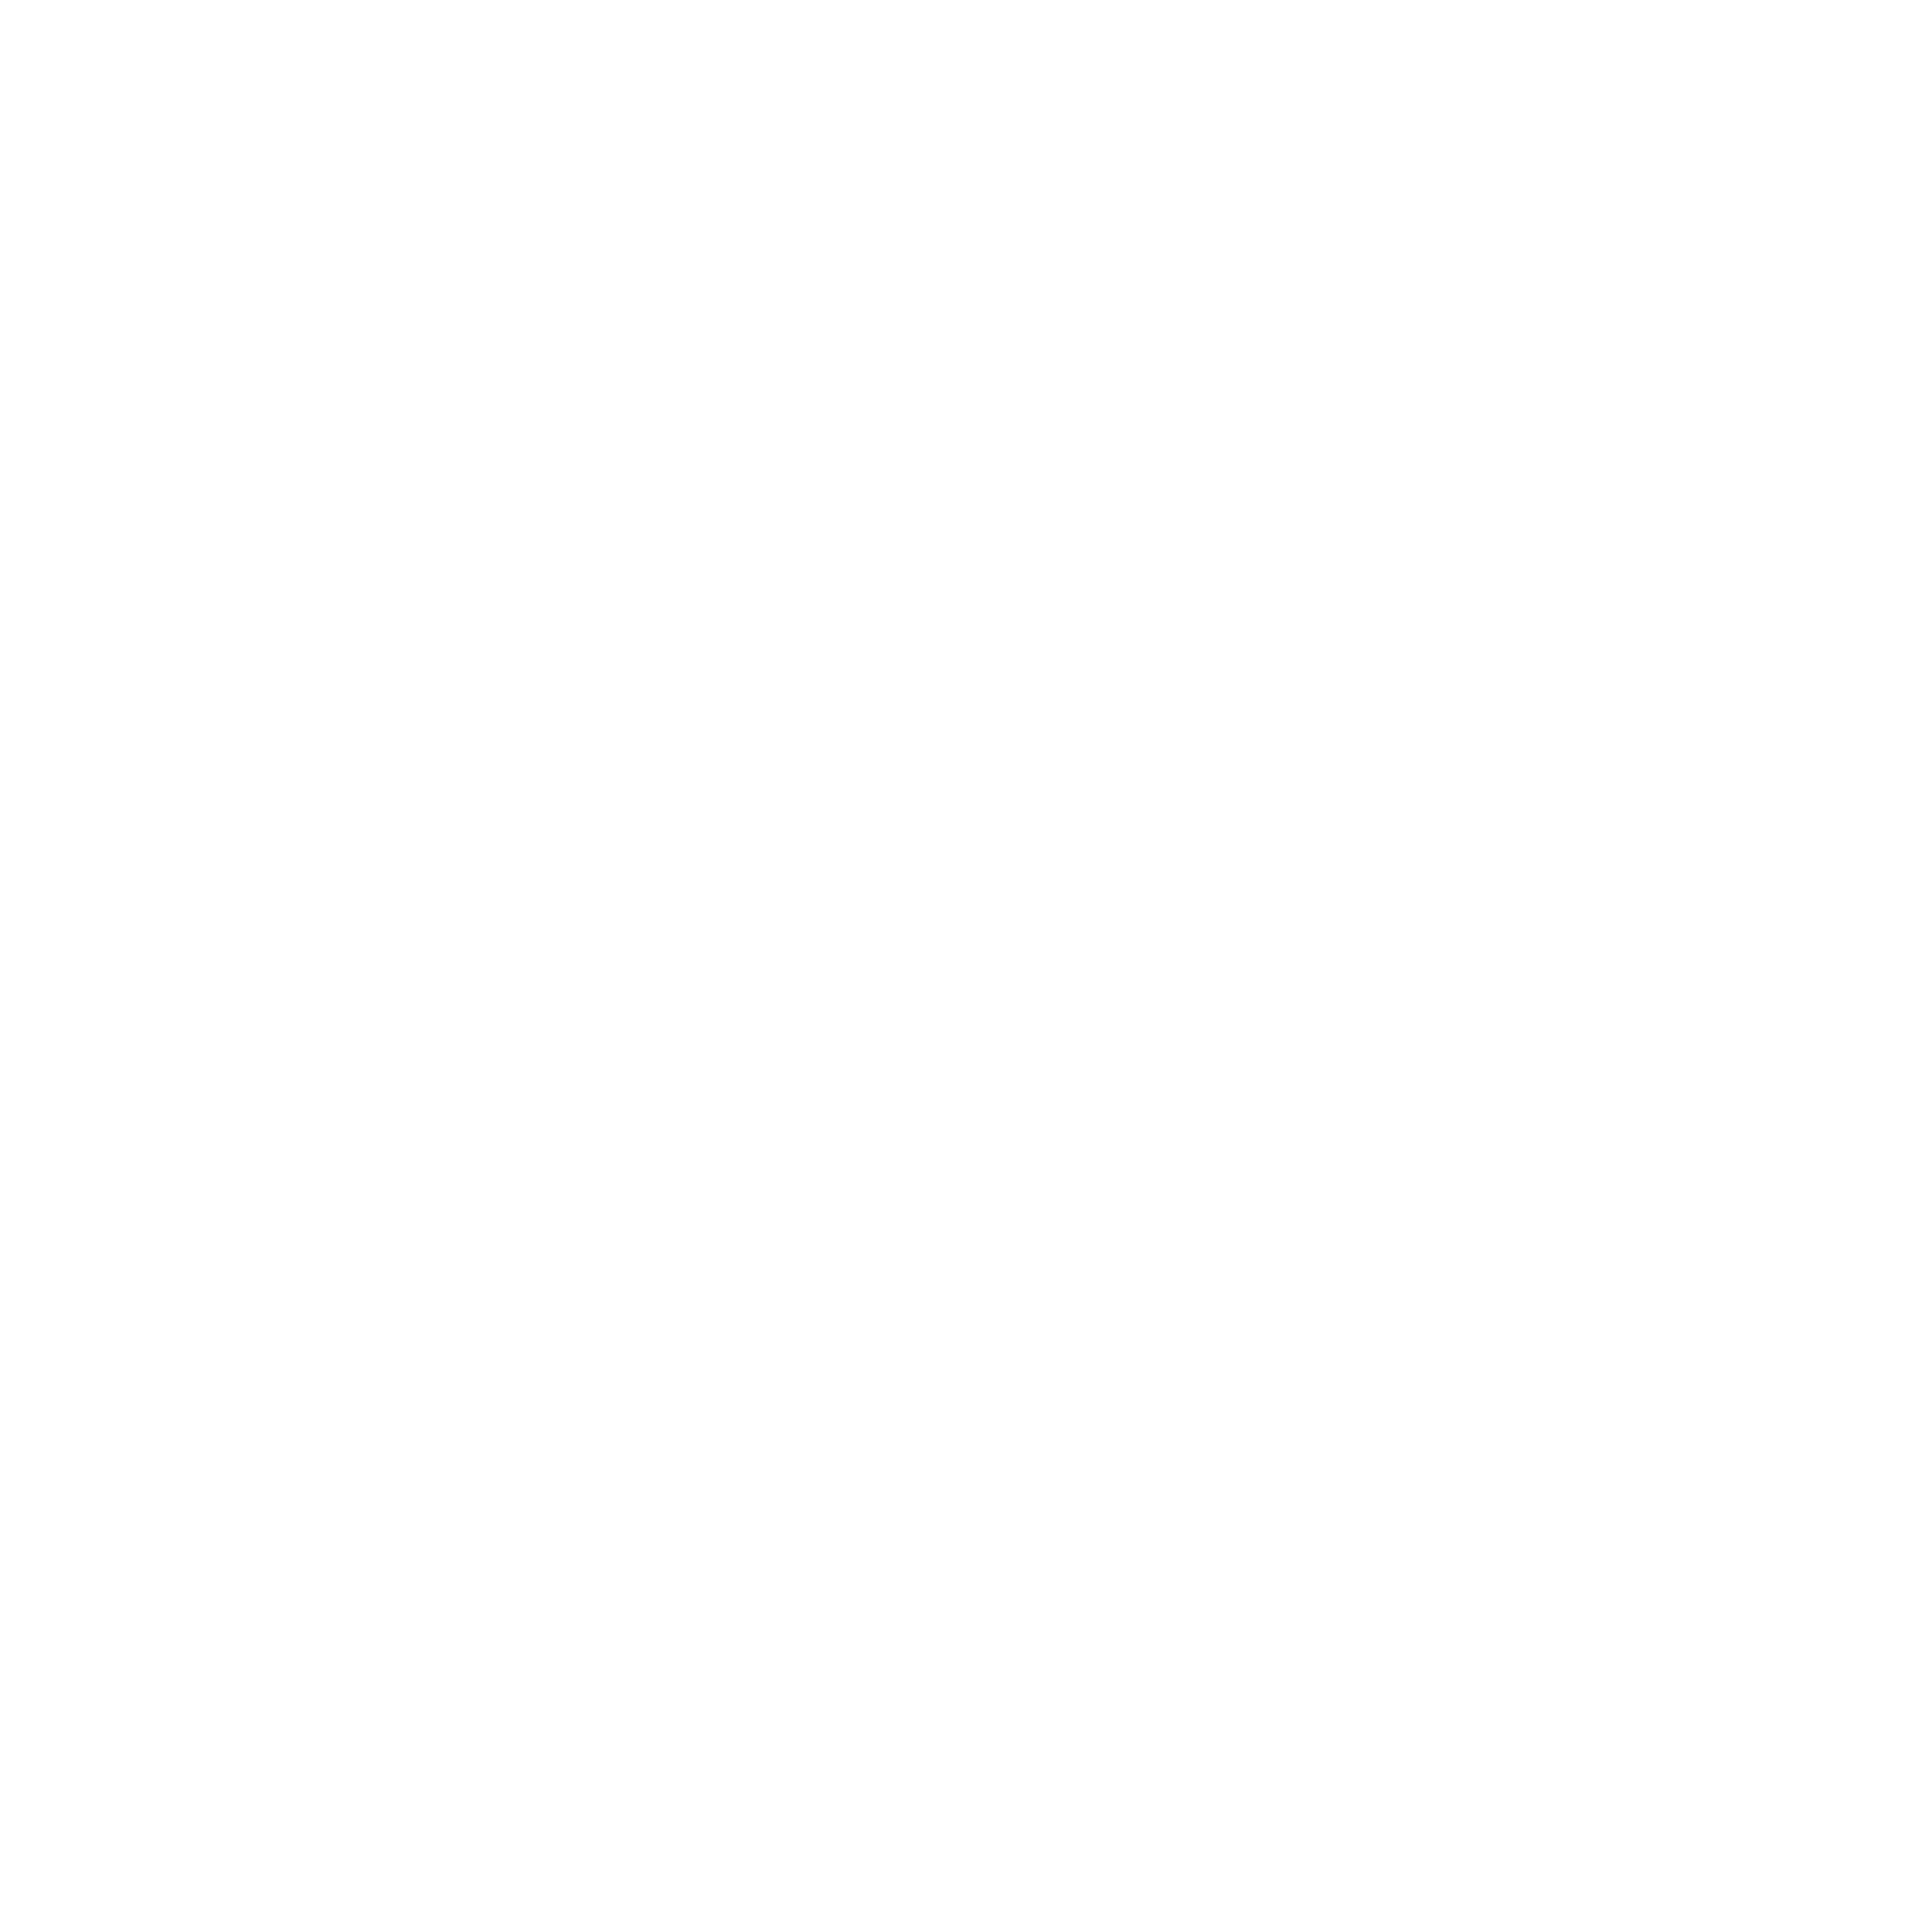 Klosterbergfabrik